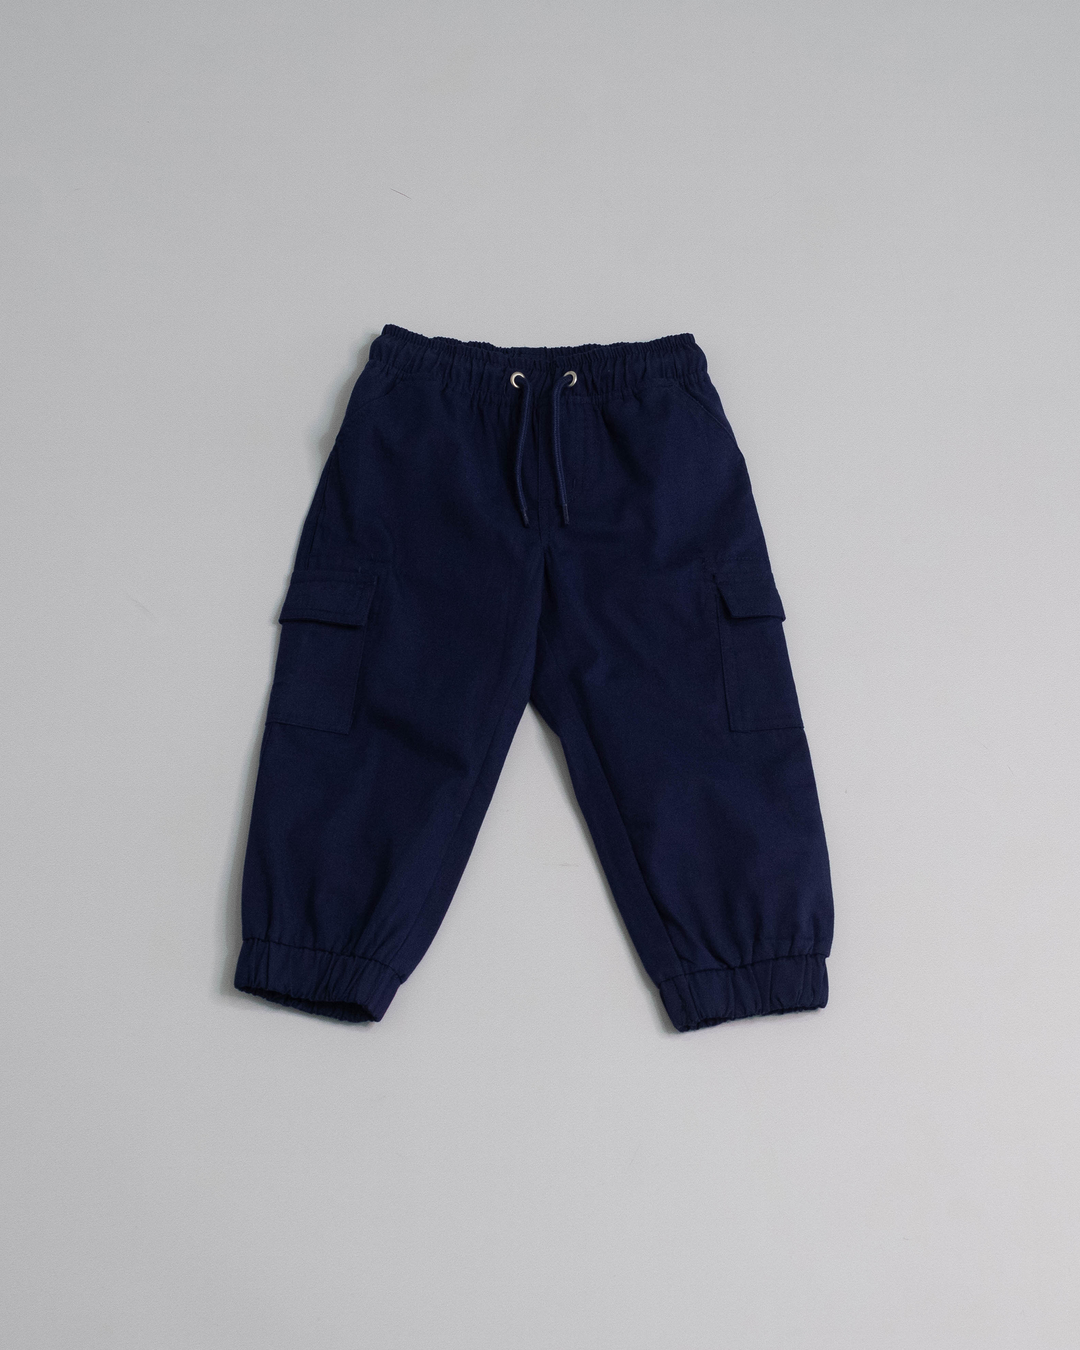 Pantalón azul oscuro cargo con ajustador